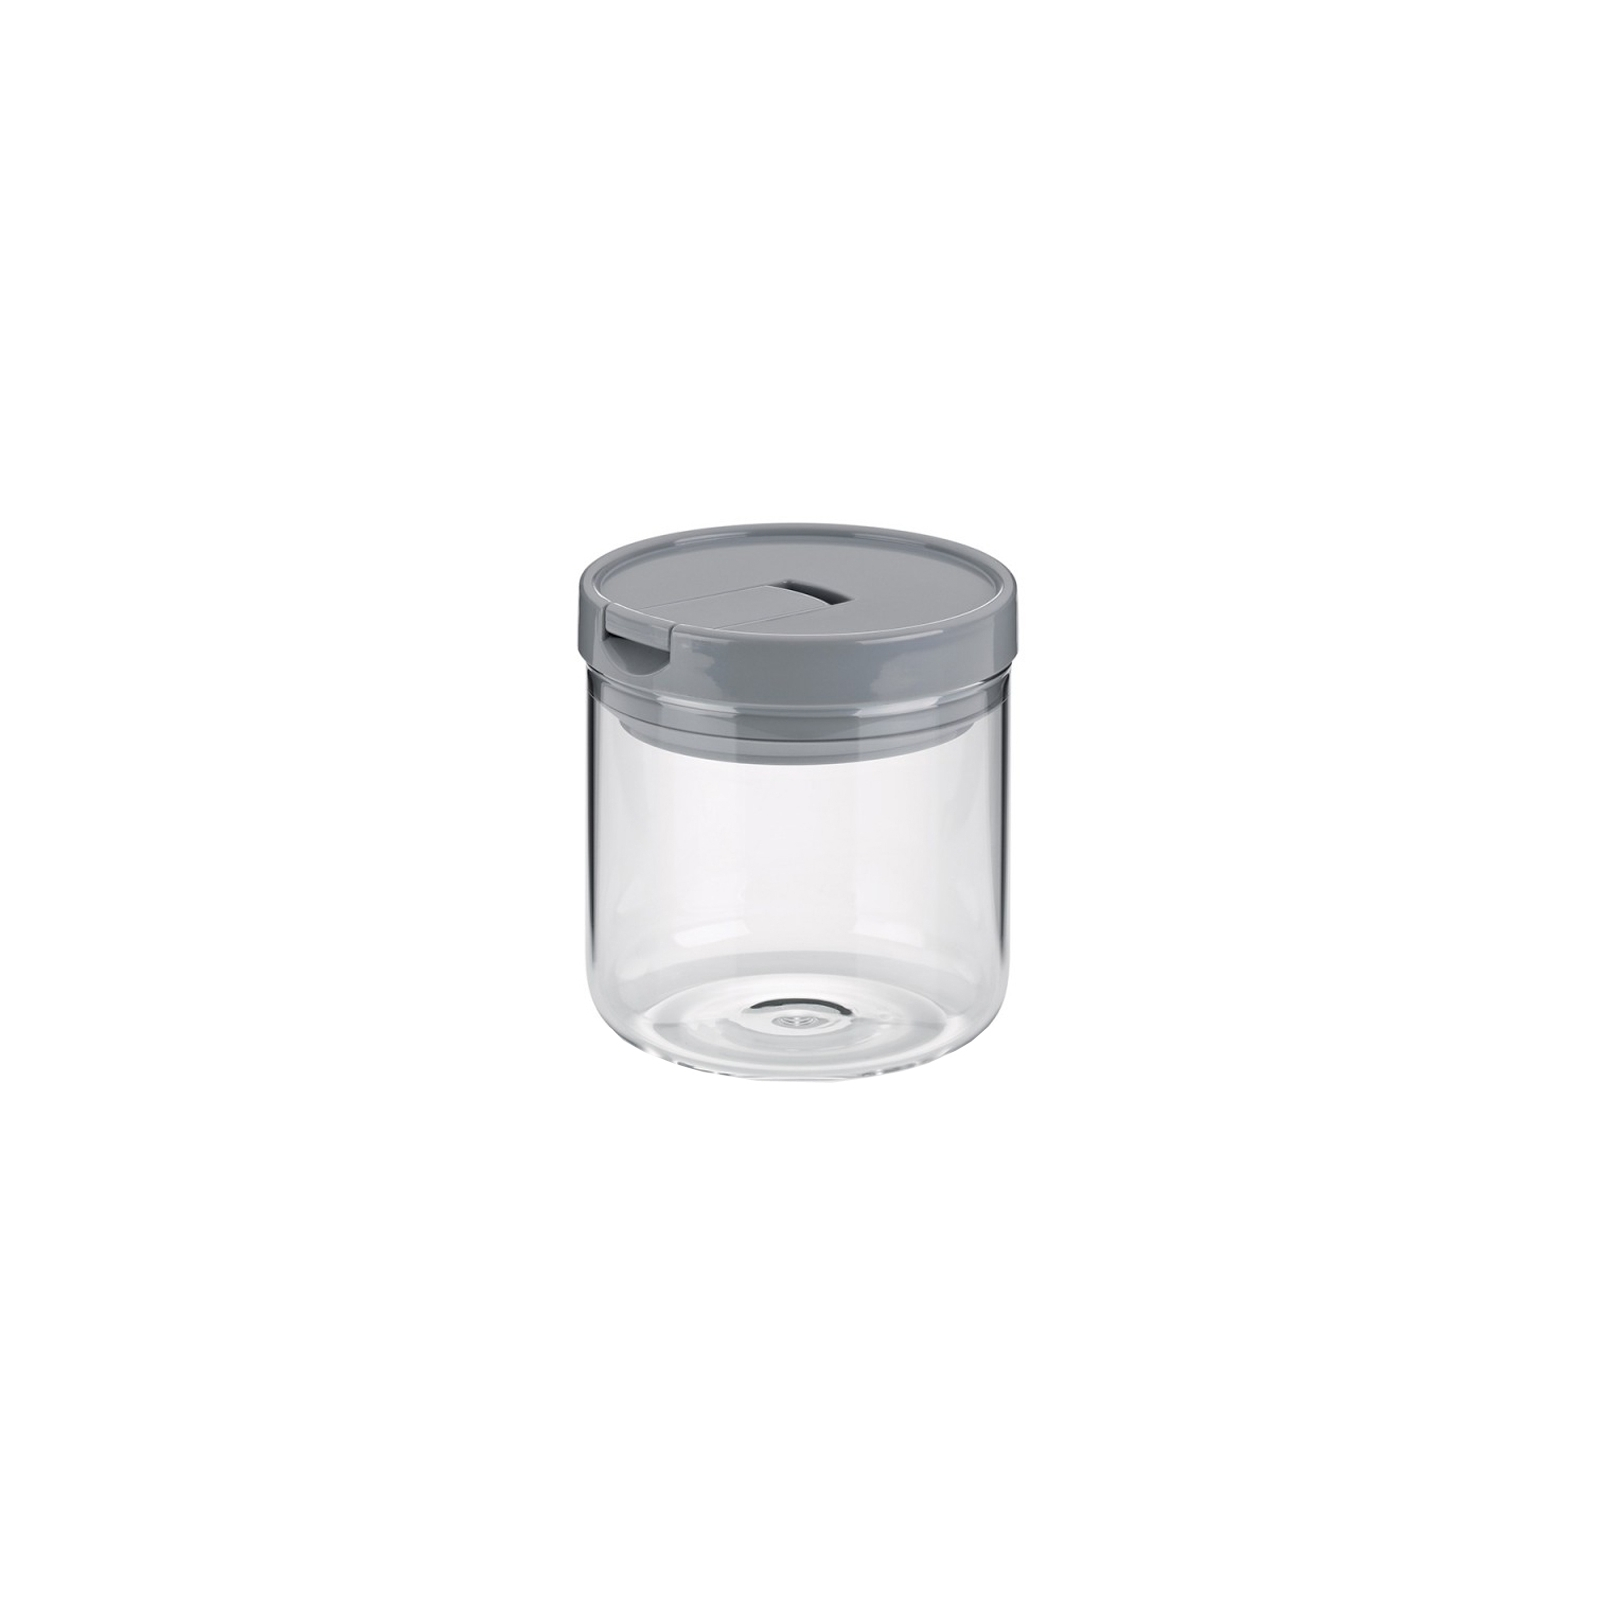 Емкость для сыпучих продуктов Kela Arik White 0,6 л 10,5х11 см (12104)